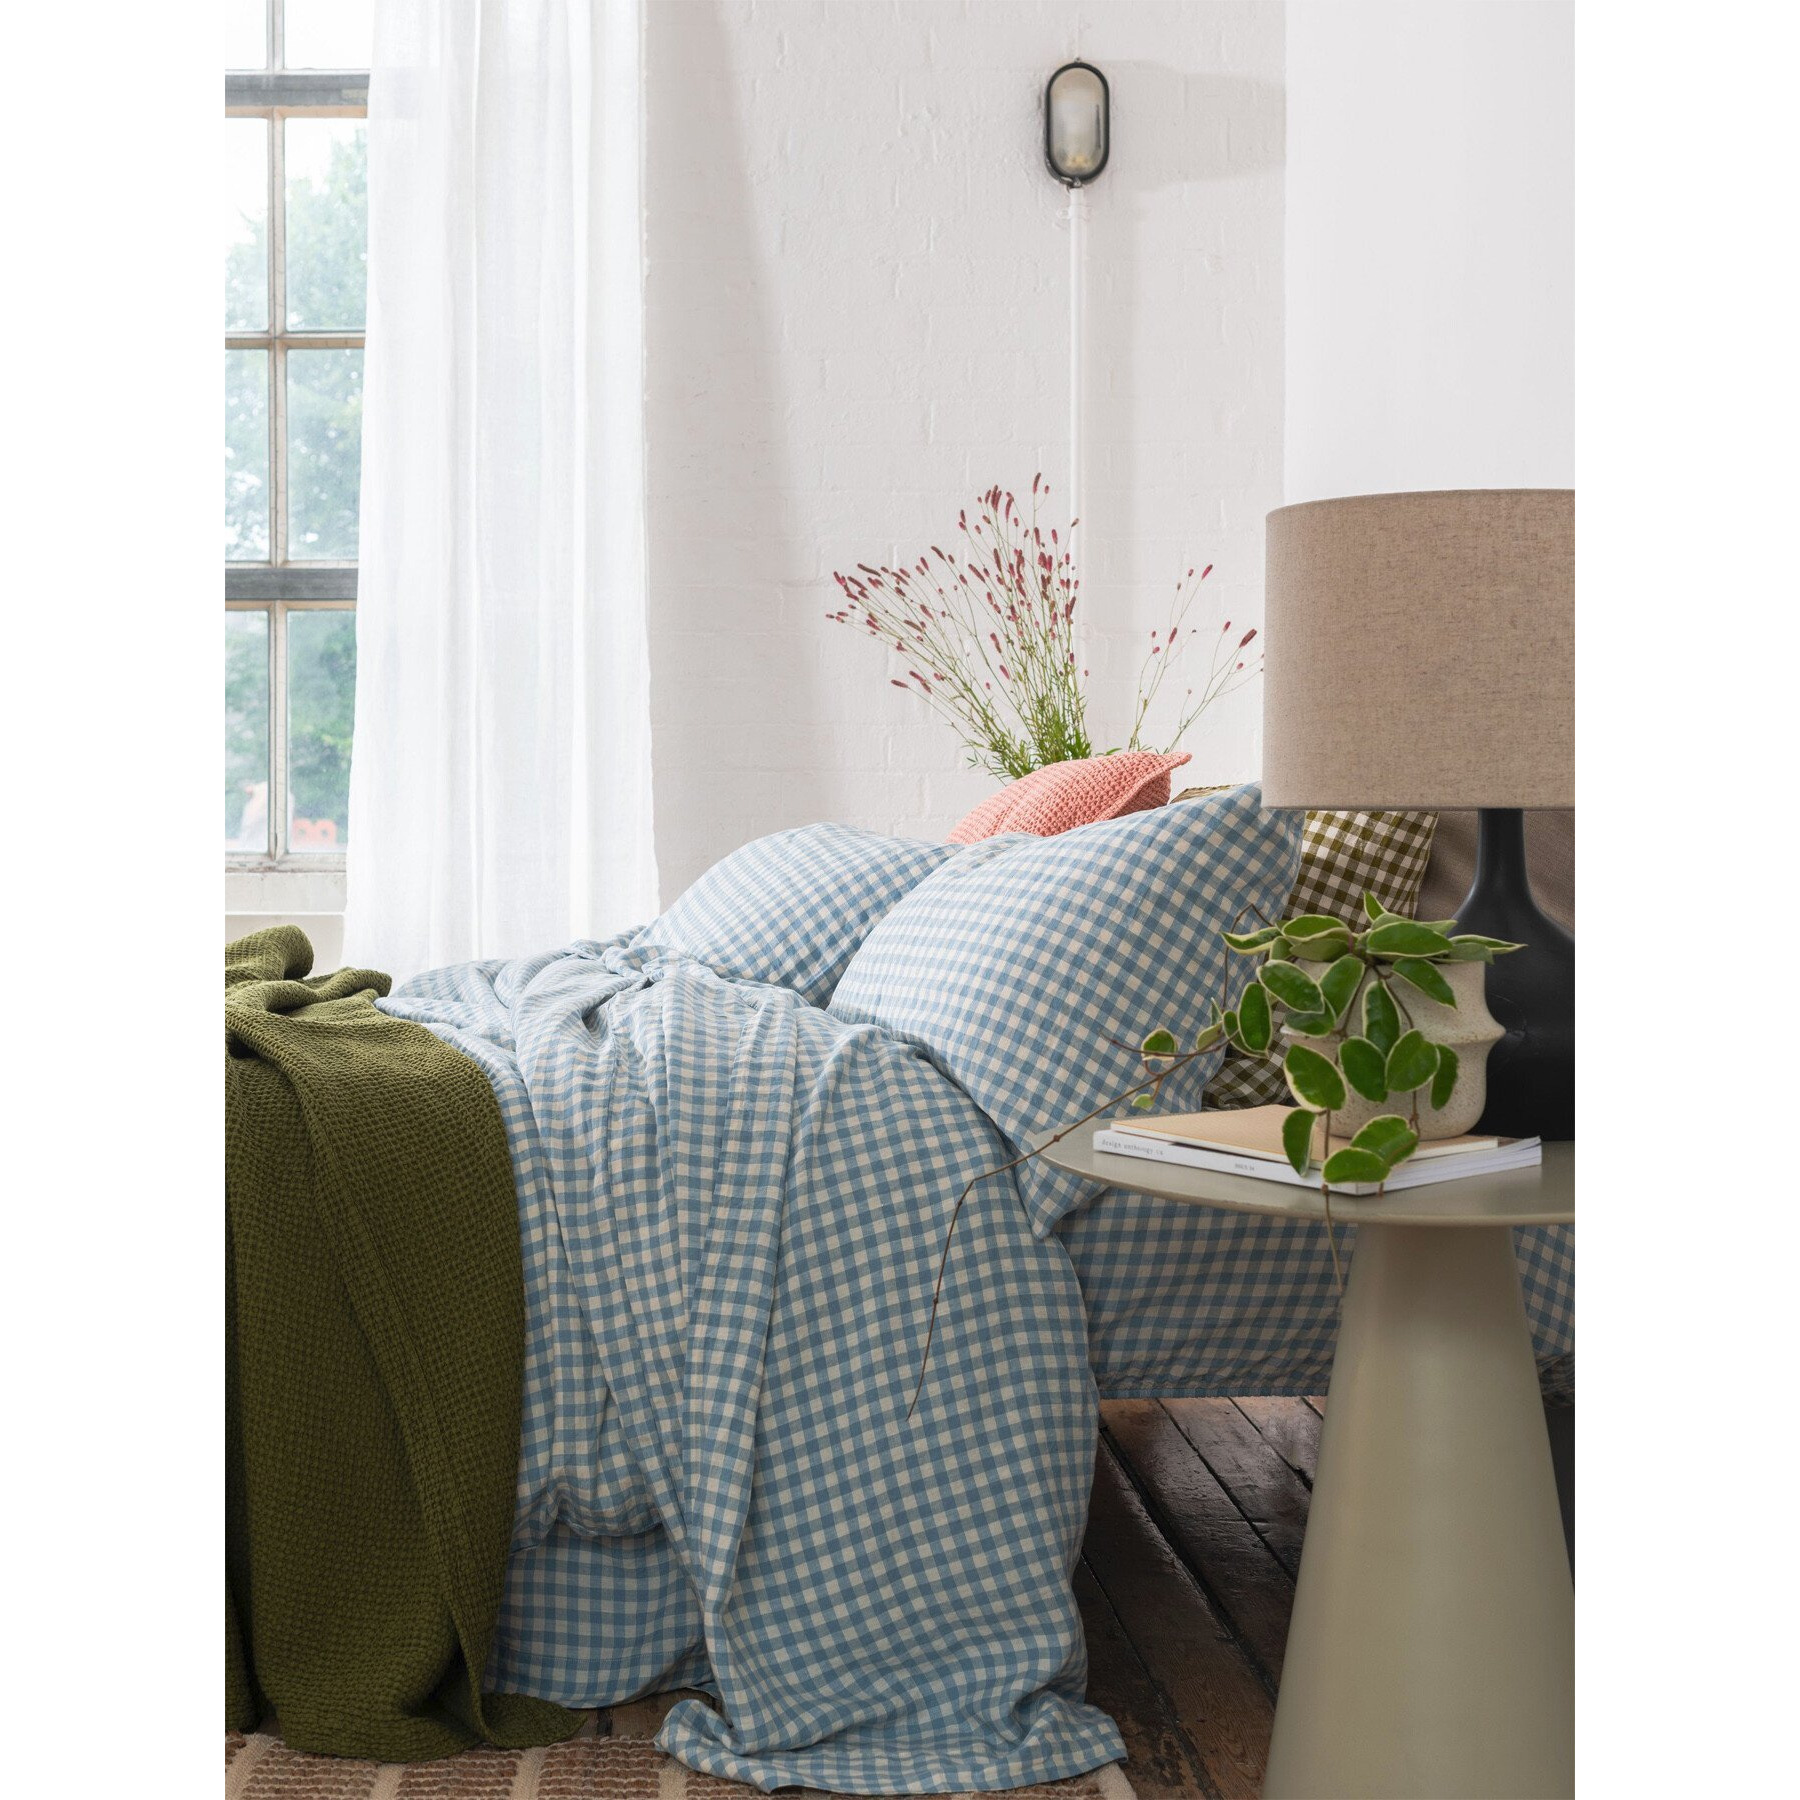 Piglet in Bed Gingham Linen Flat Sheet - Size Super King Blue - image 1